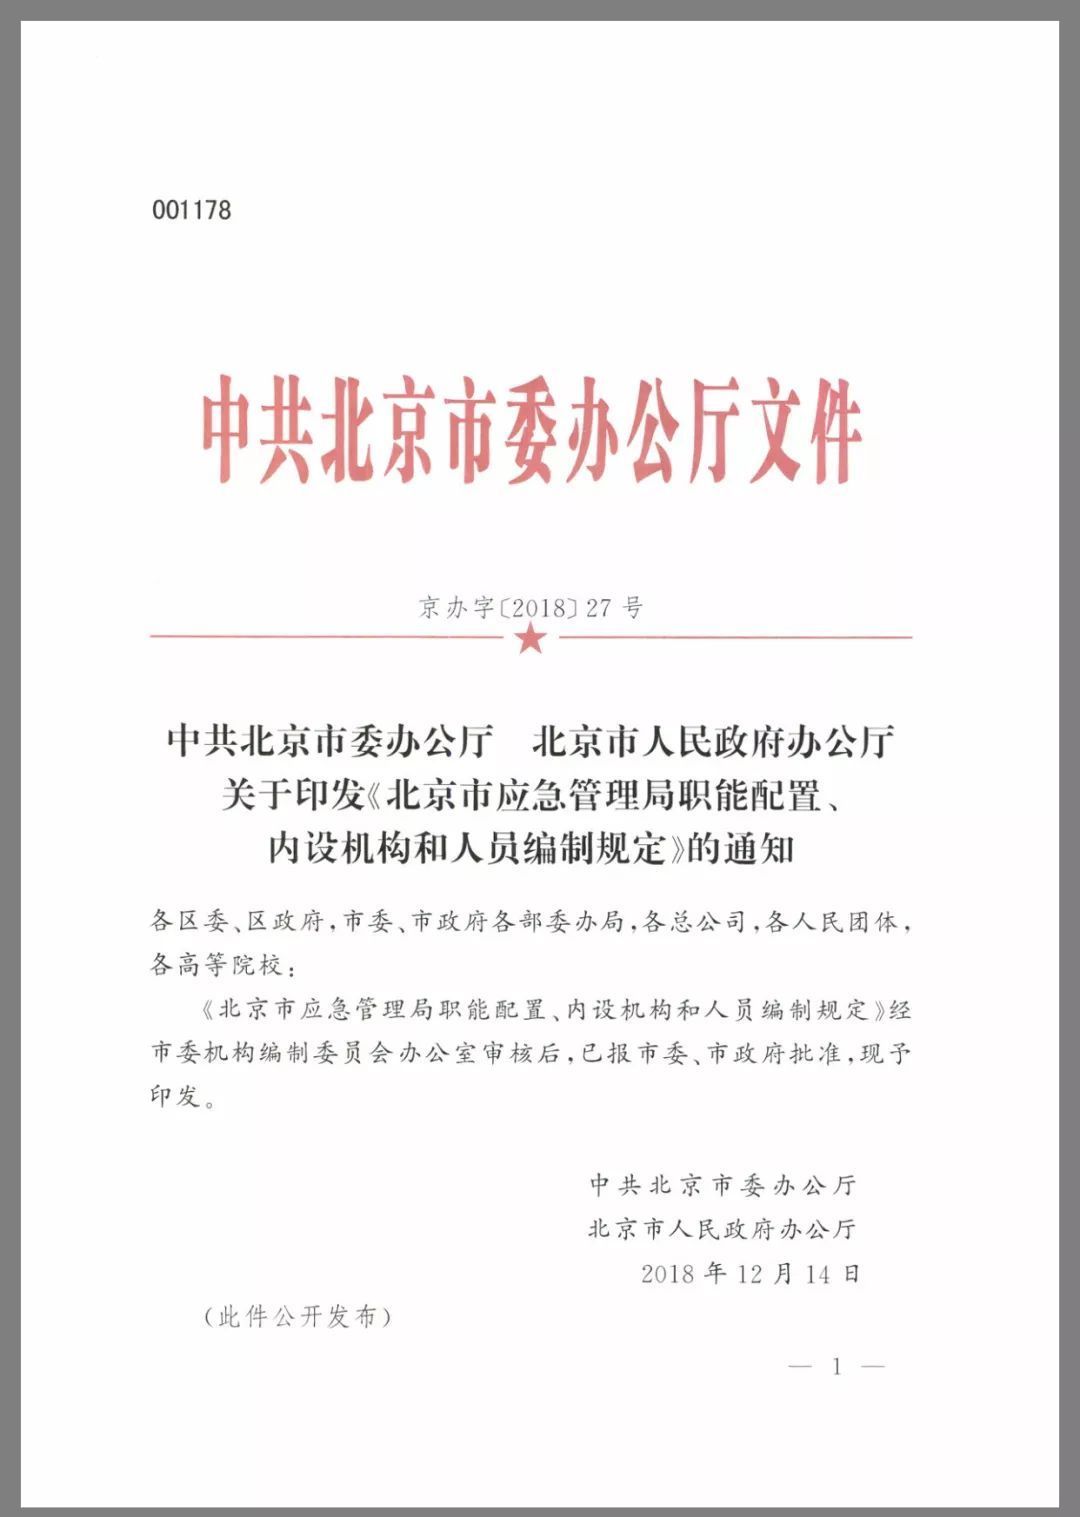 三定方案 | 《北京市应急管理局职能配置、内设